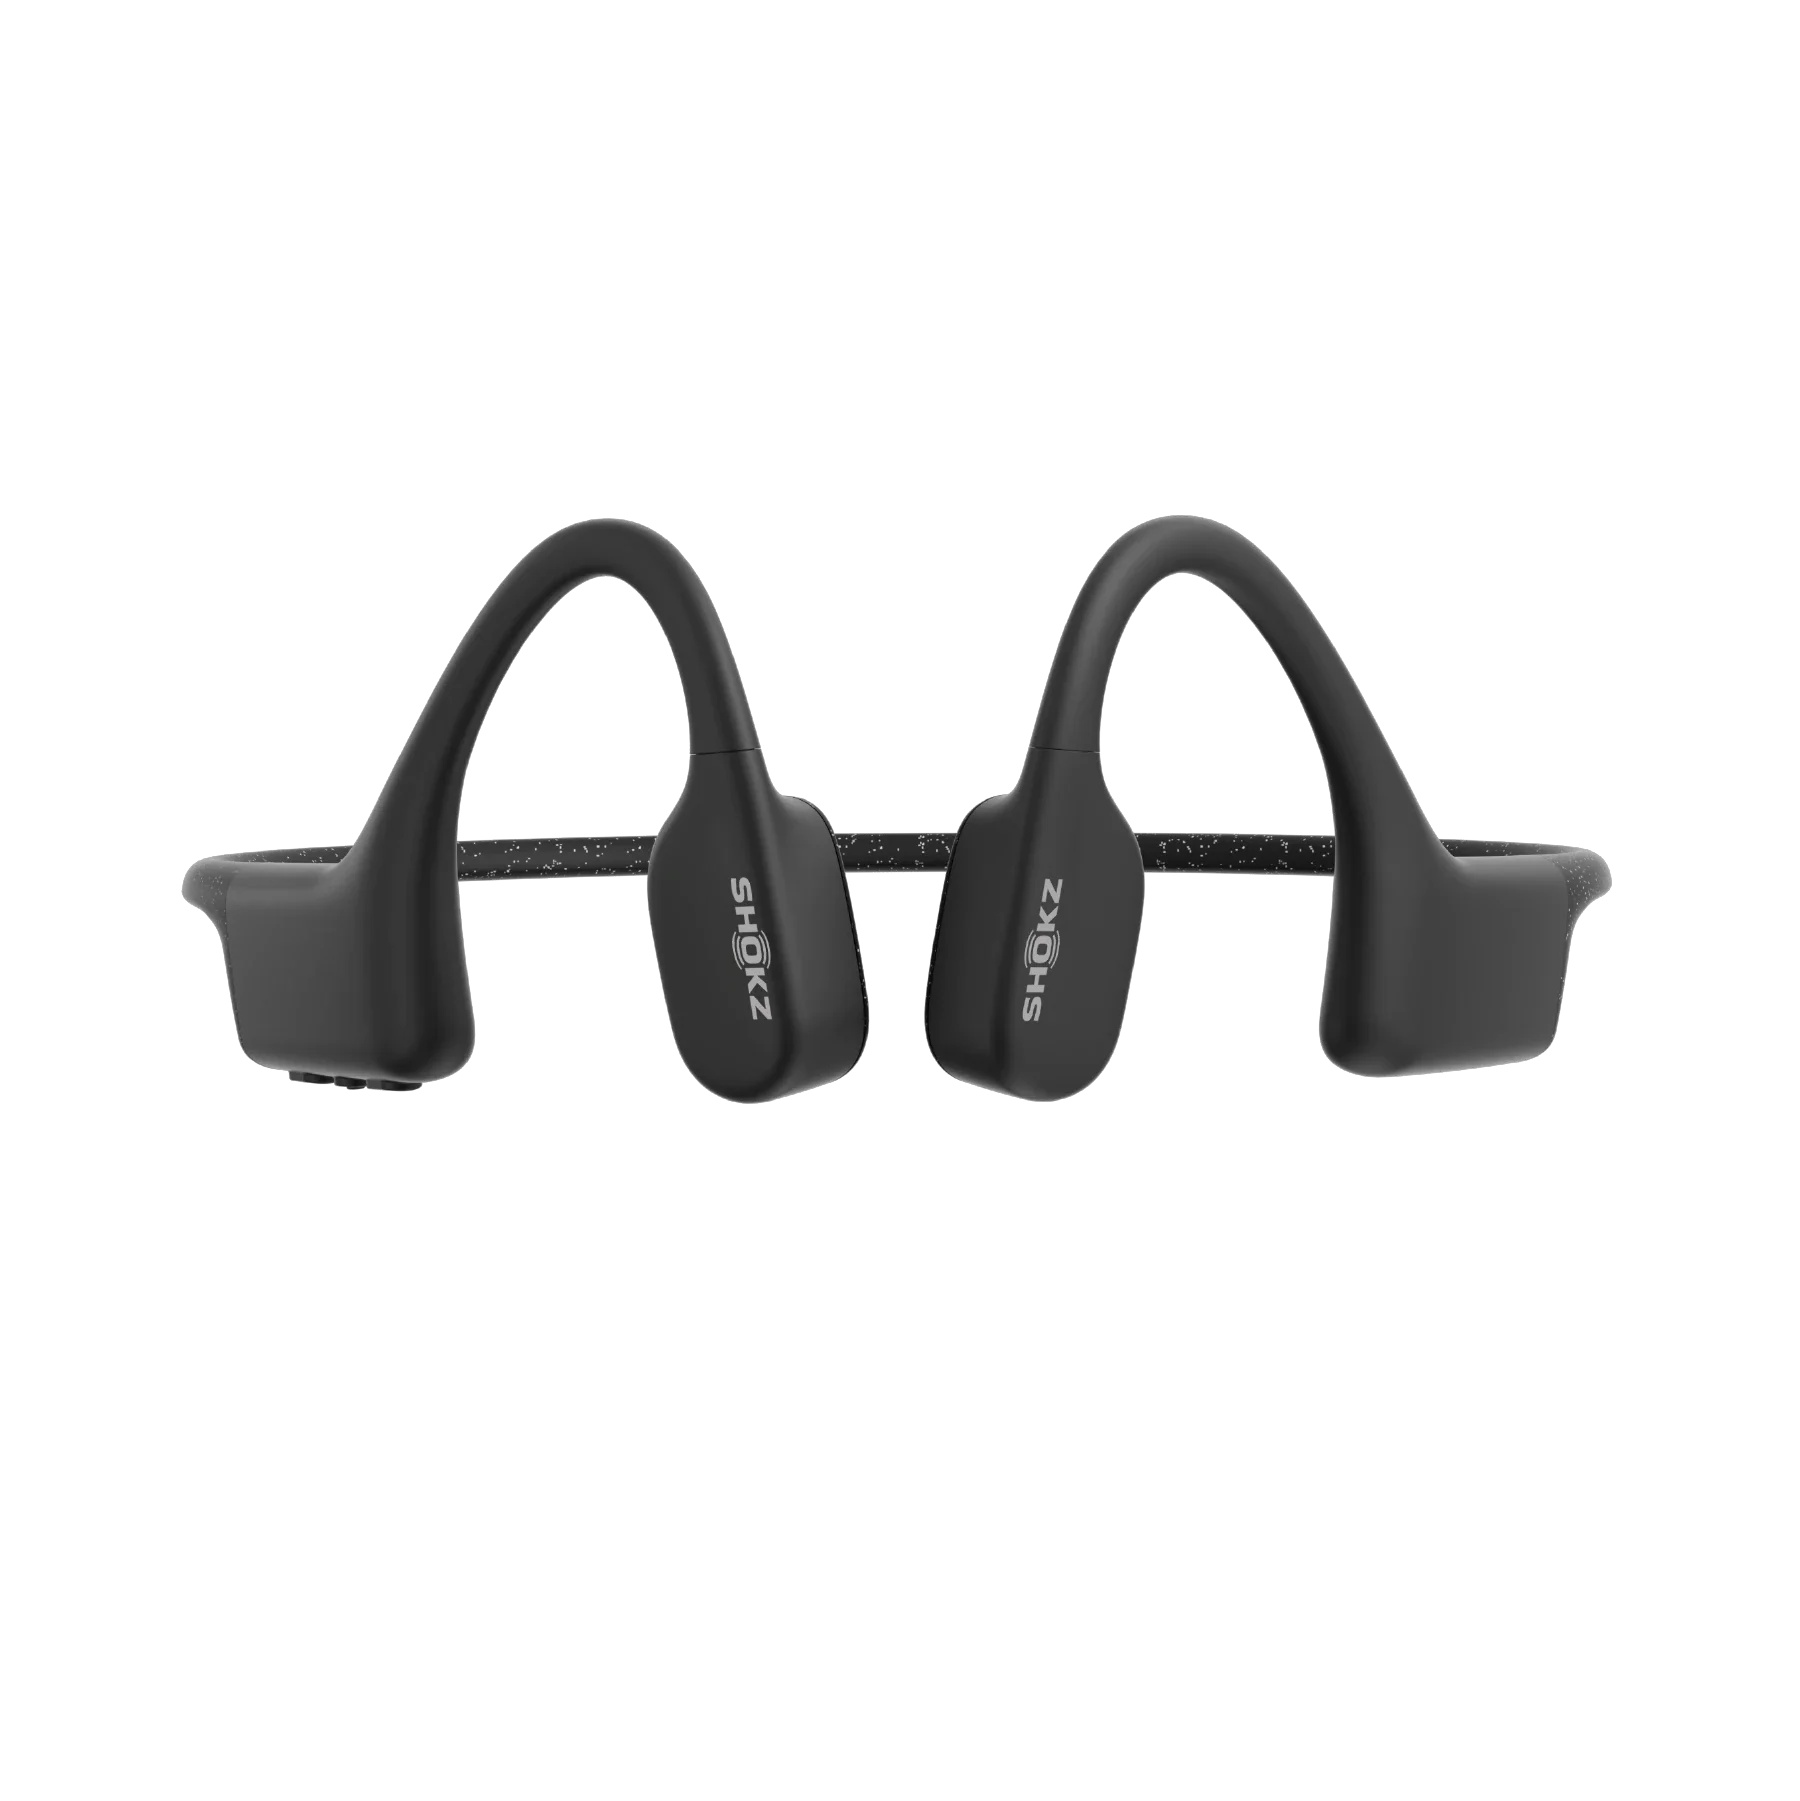 AfterShokz Xtrainerz Headphones Swim Bone Conduction Waterproof Earphones  4GB